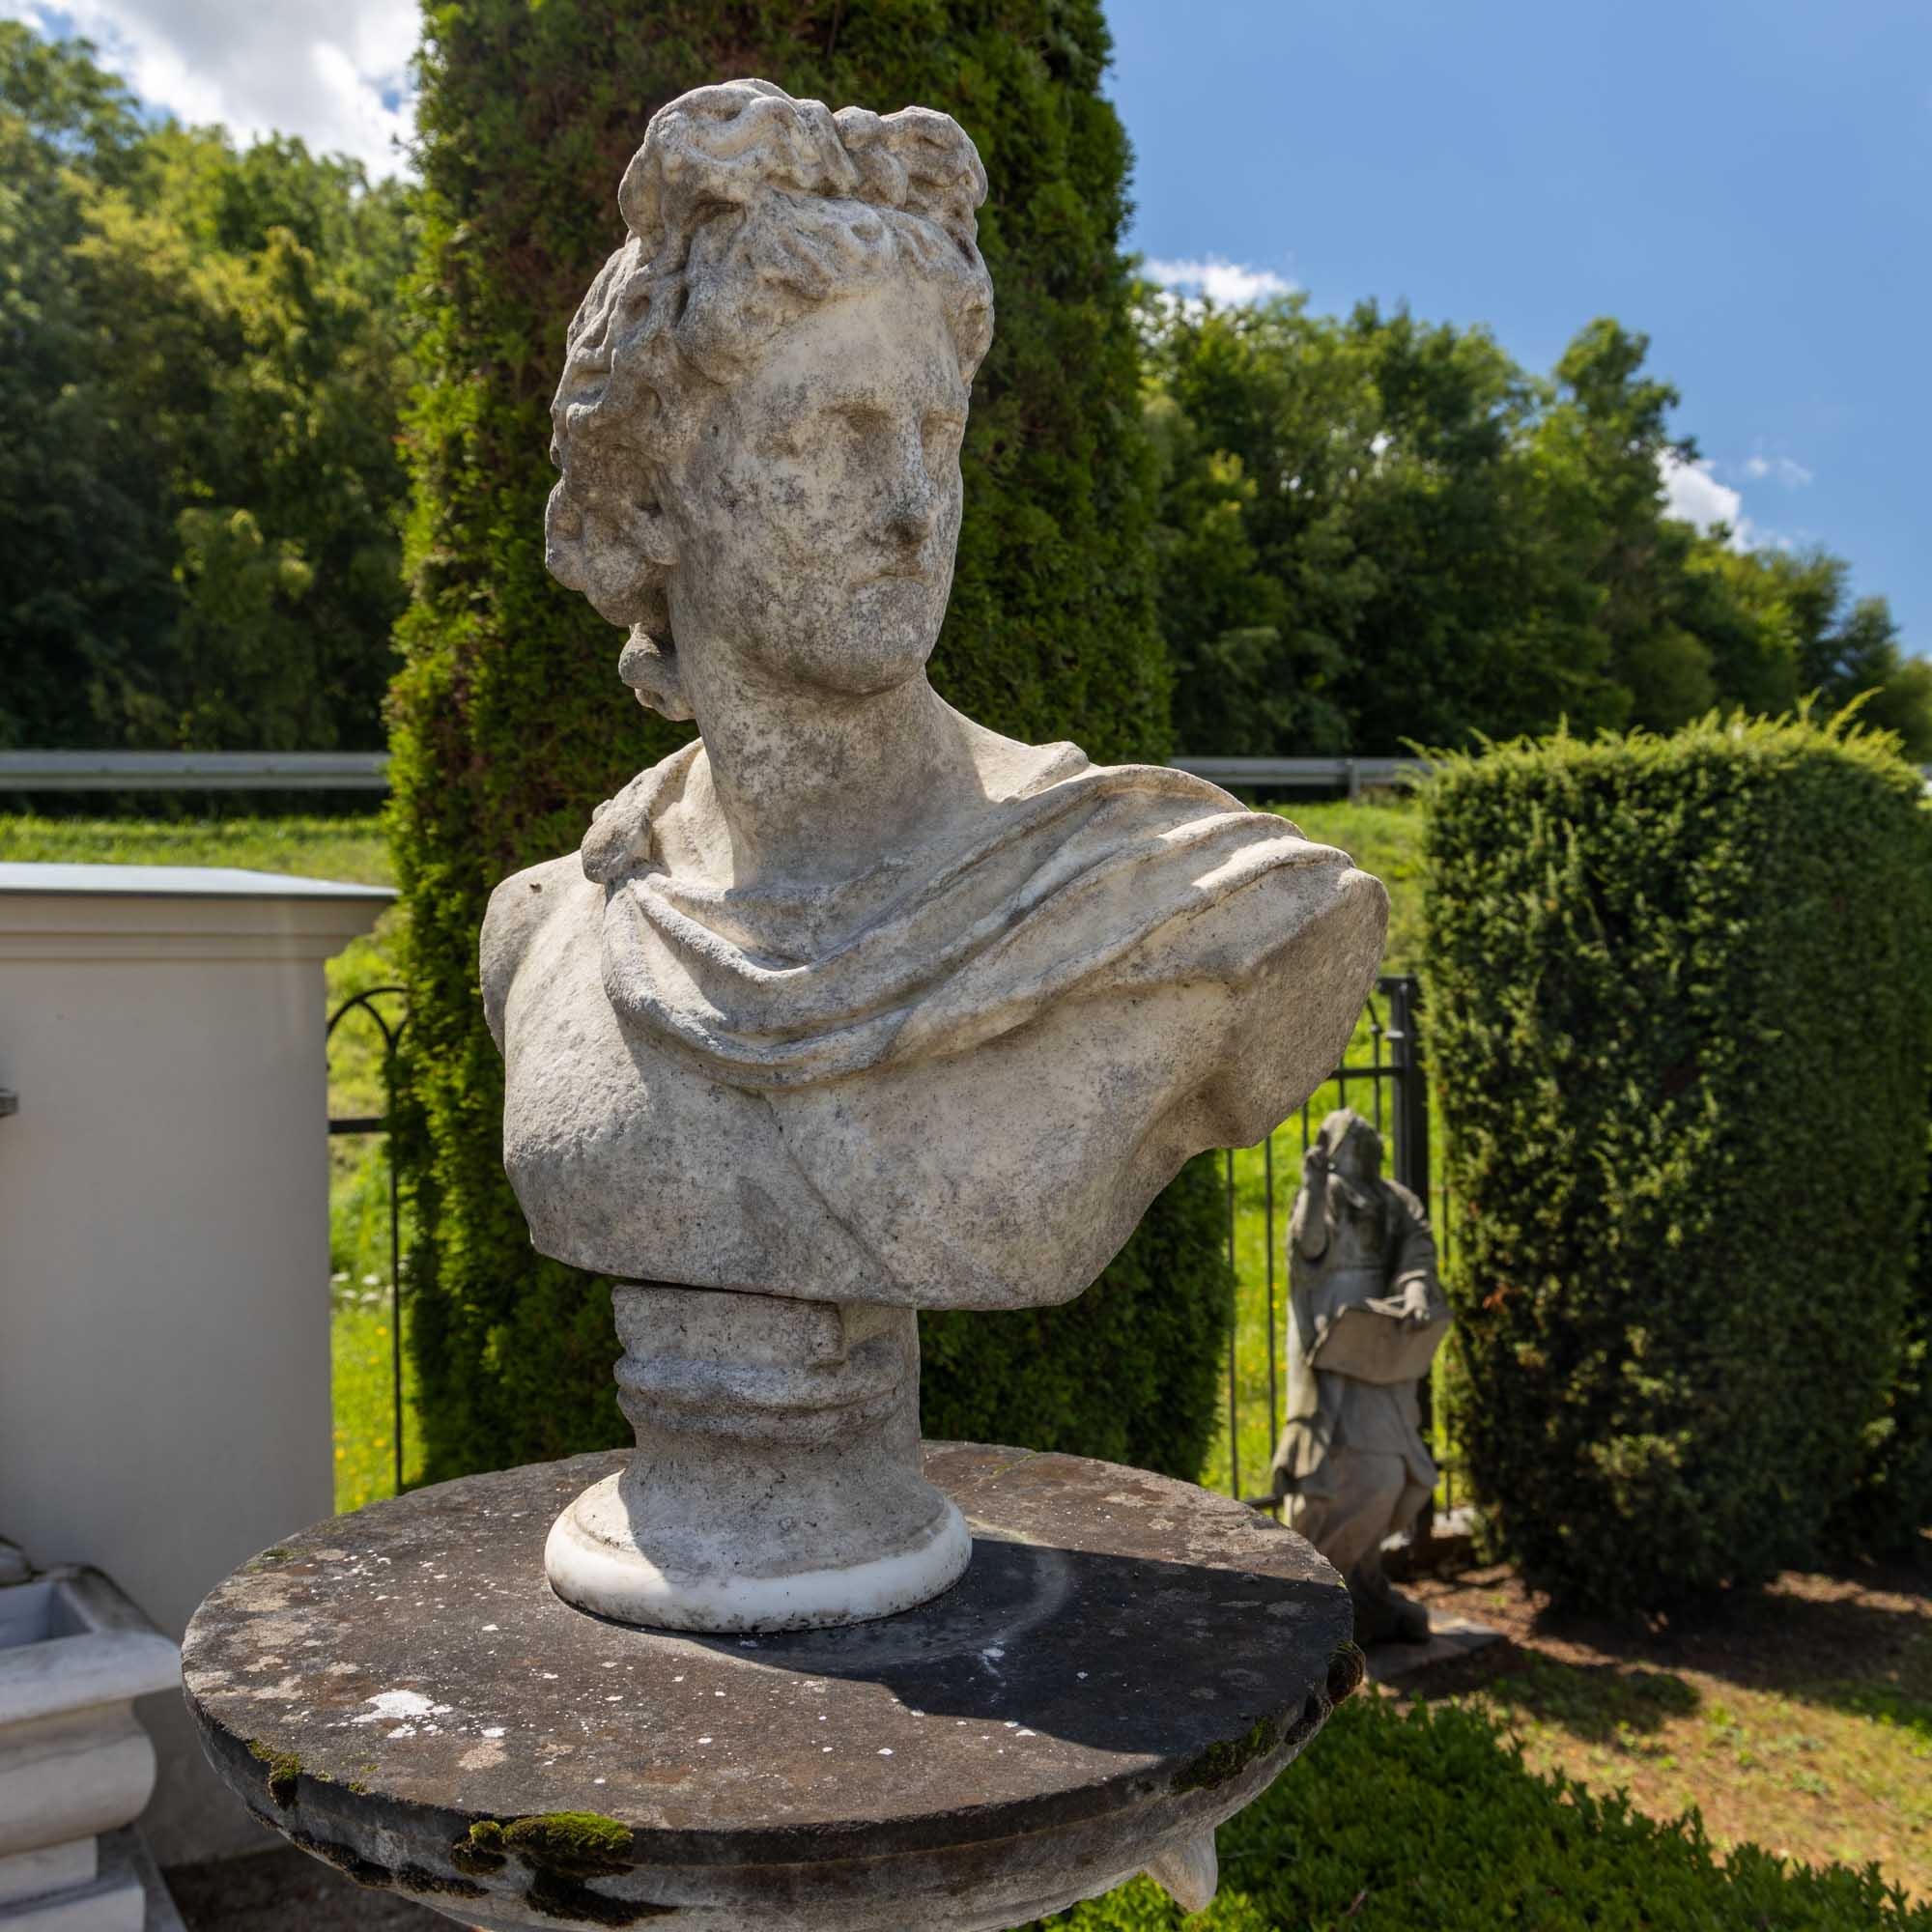 Büste des berühmten Apollo von Belvedere, das Original stammt aus dem dritten Jahrhundert vor Christus. Hier eine Variante aus handgeschliffenem Granit mit Verwitterungsspuren und einem leicht abgemilderten authentischen Charakter.